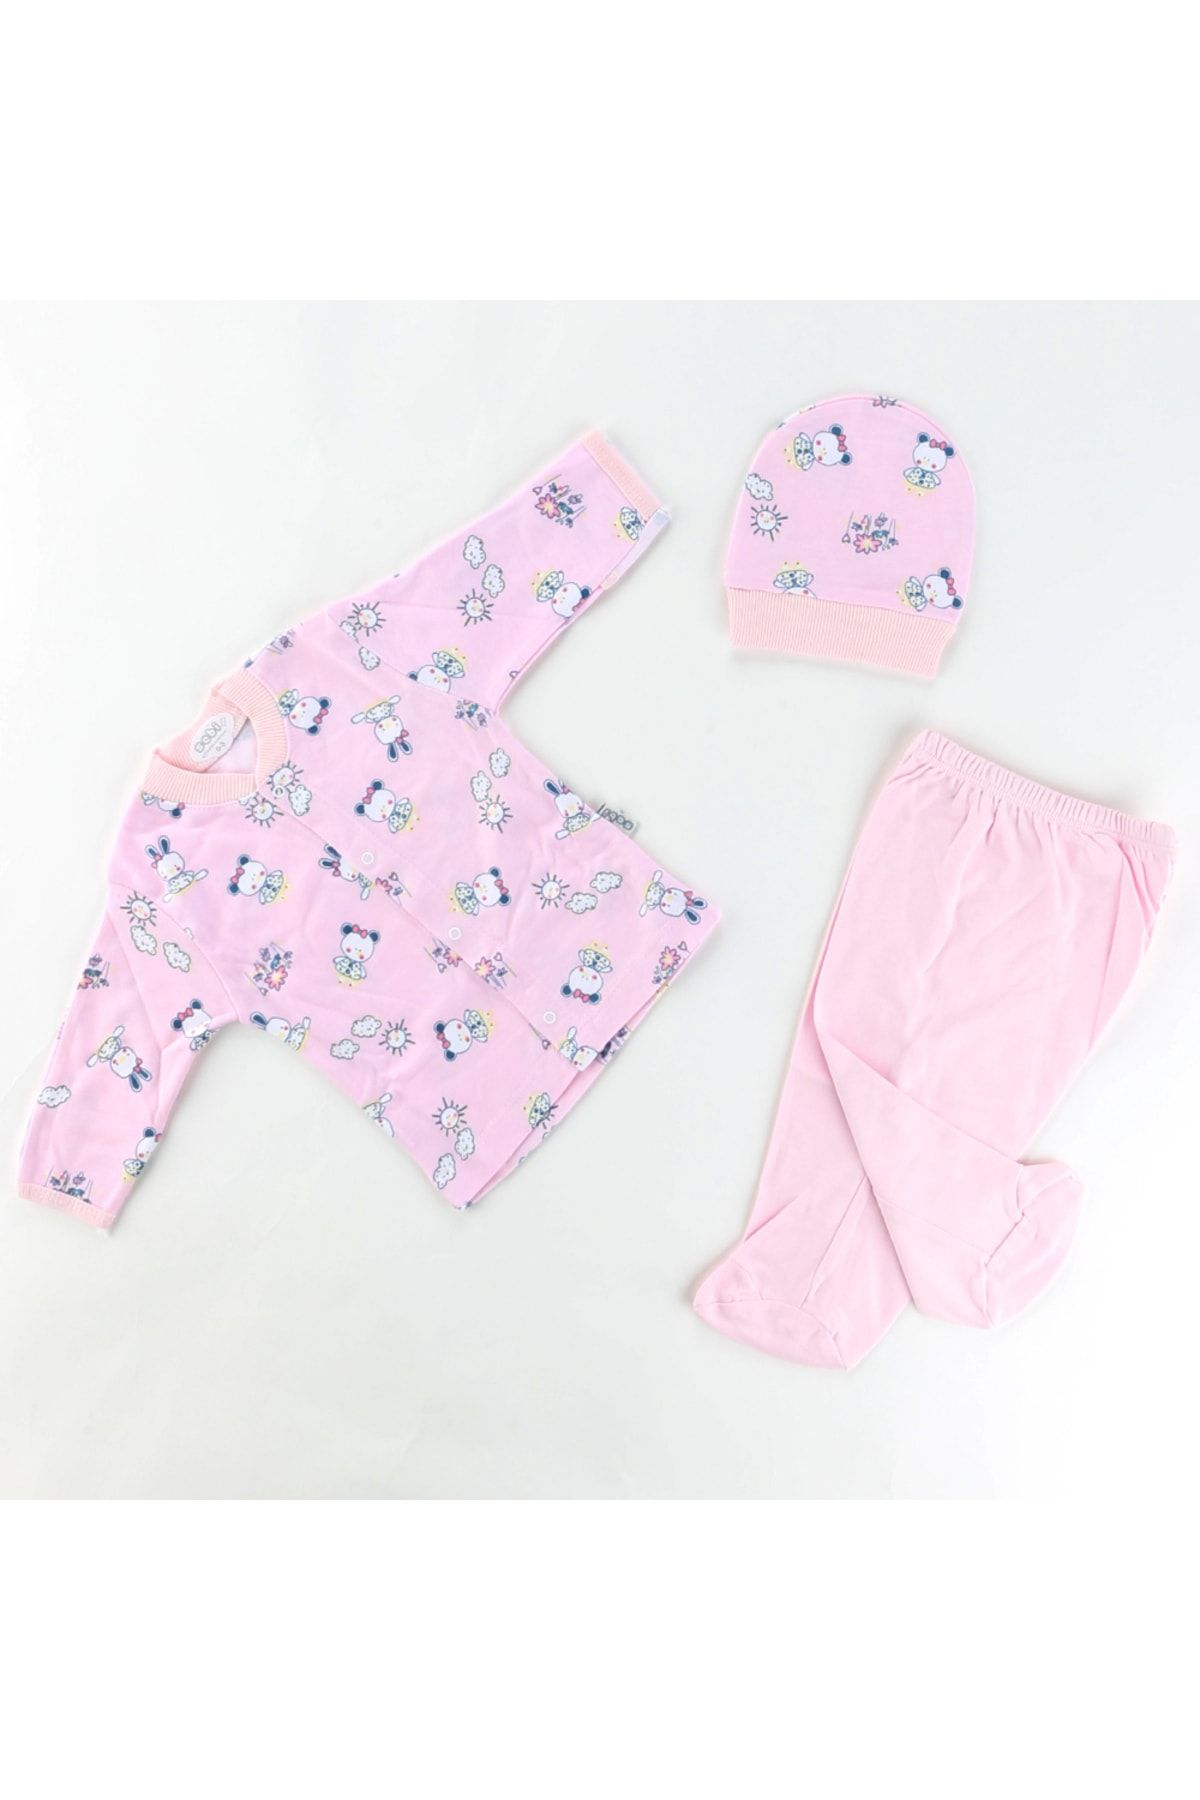 Sebi Bebe Bebek Pijama Takımı Tavşanlı Kız